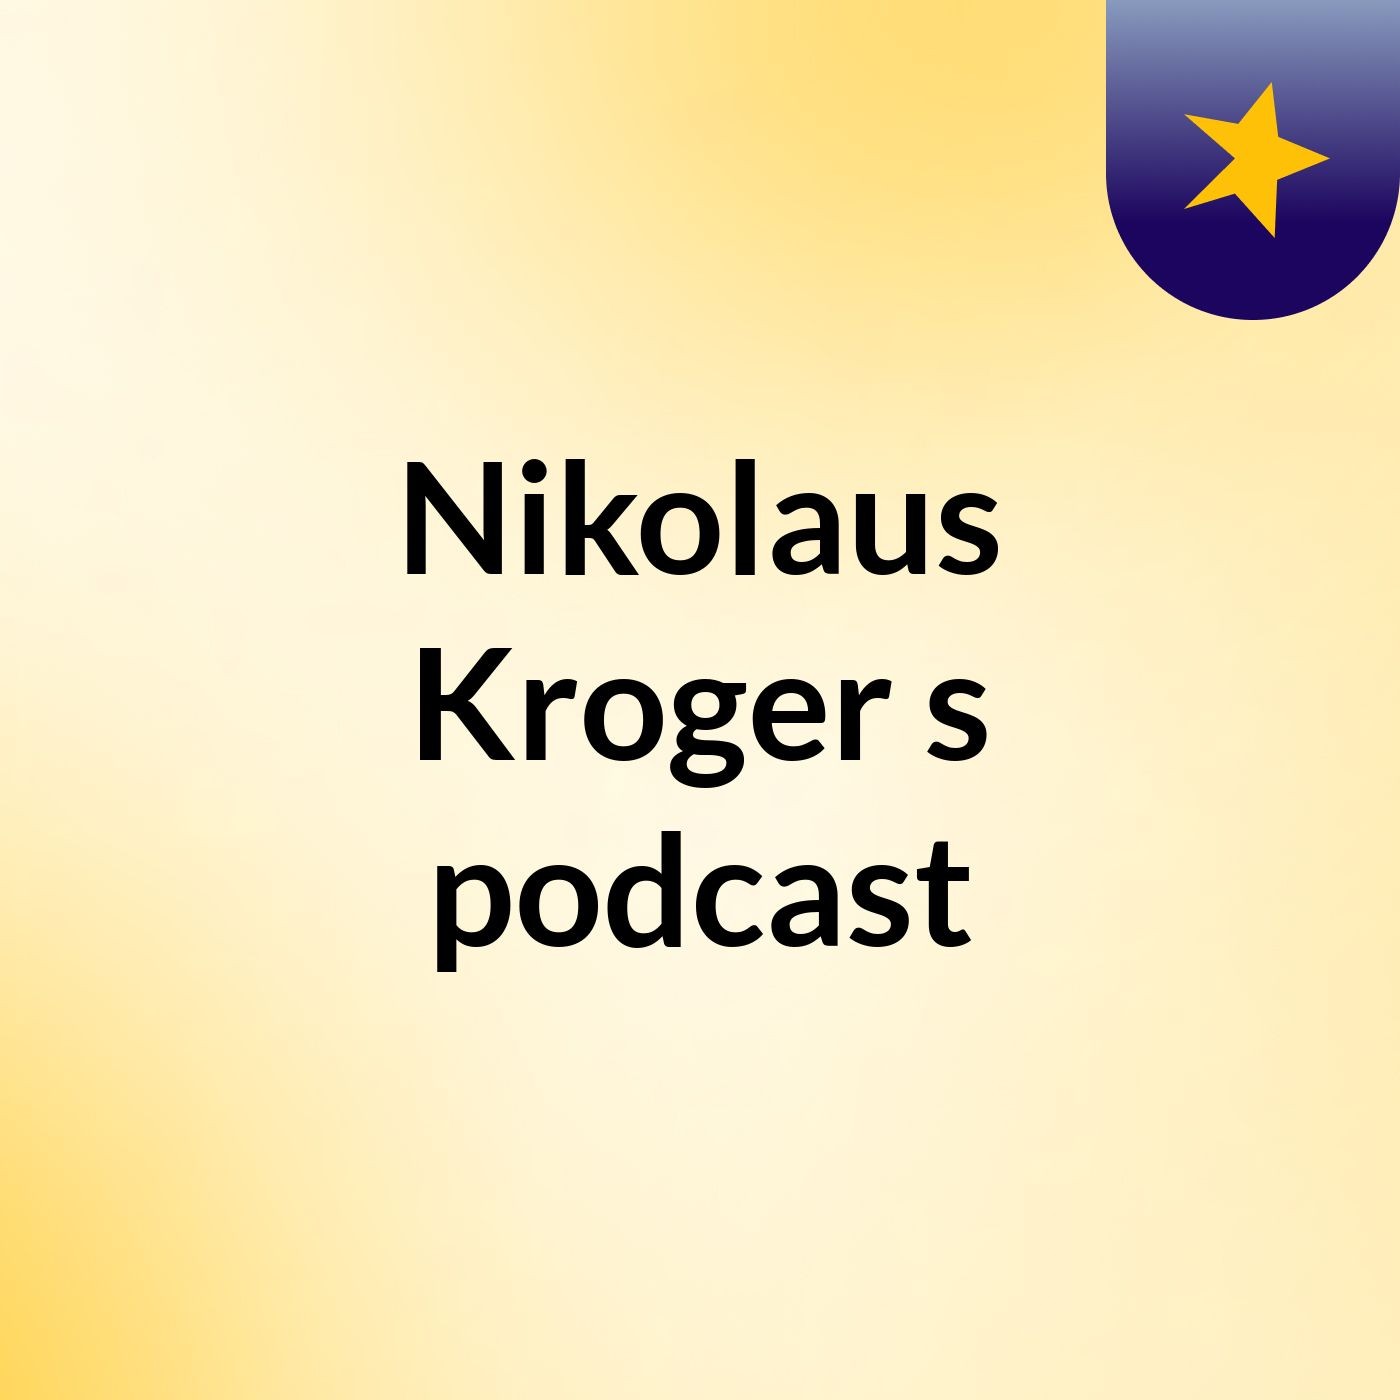 Nikolaus Kroger's podcast